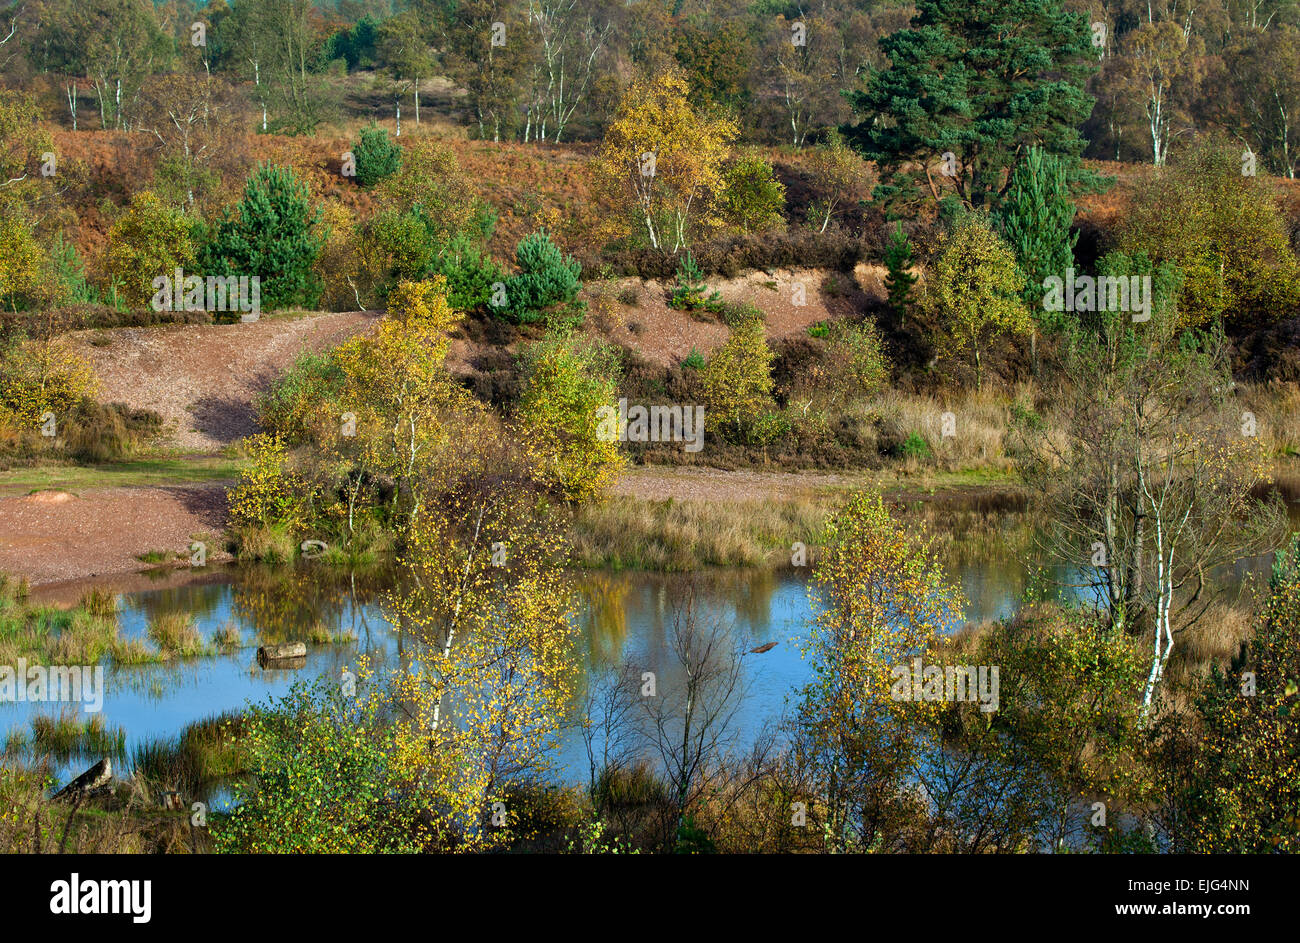 Herbstliche Farbtöne und Schattierungen auf ehemaligen Steinbruch Cannock Chase AONB Area of Outstanding Natural Beauty im Herbst Staffordshire England Stockfoto